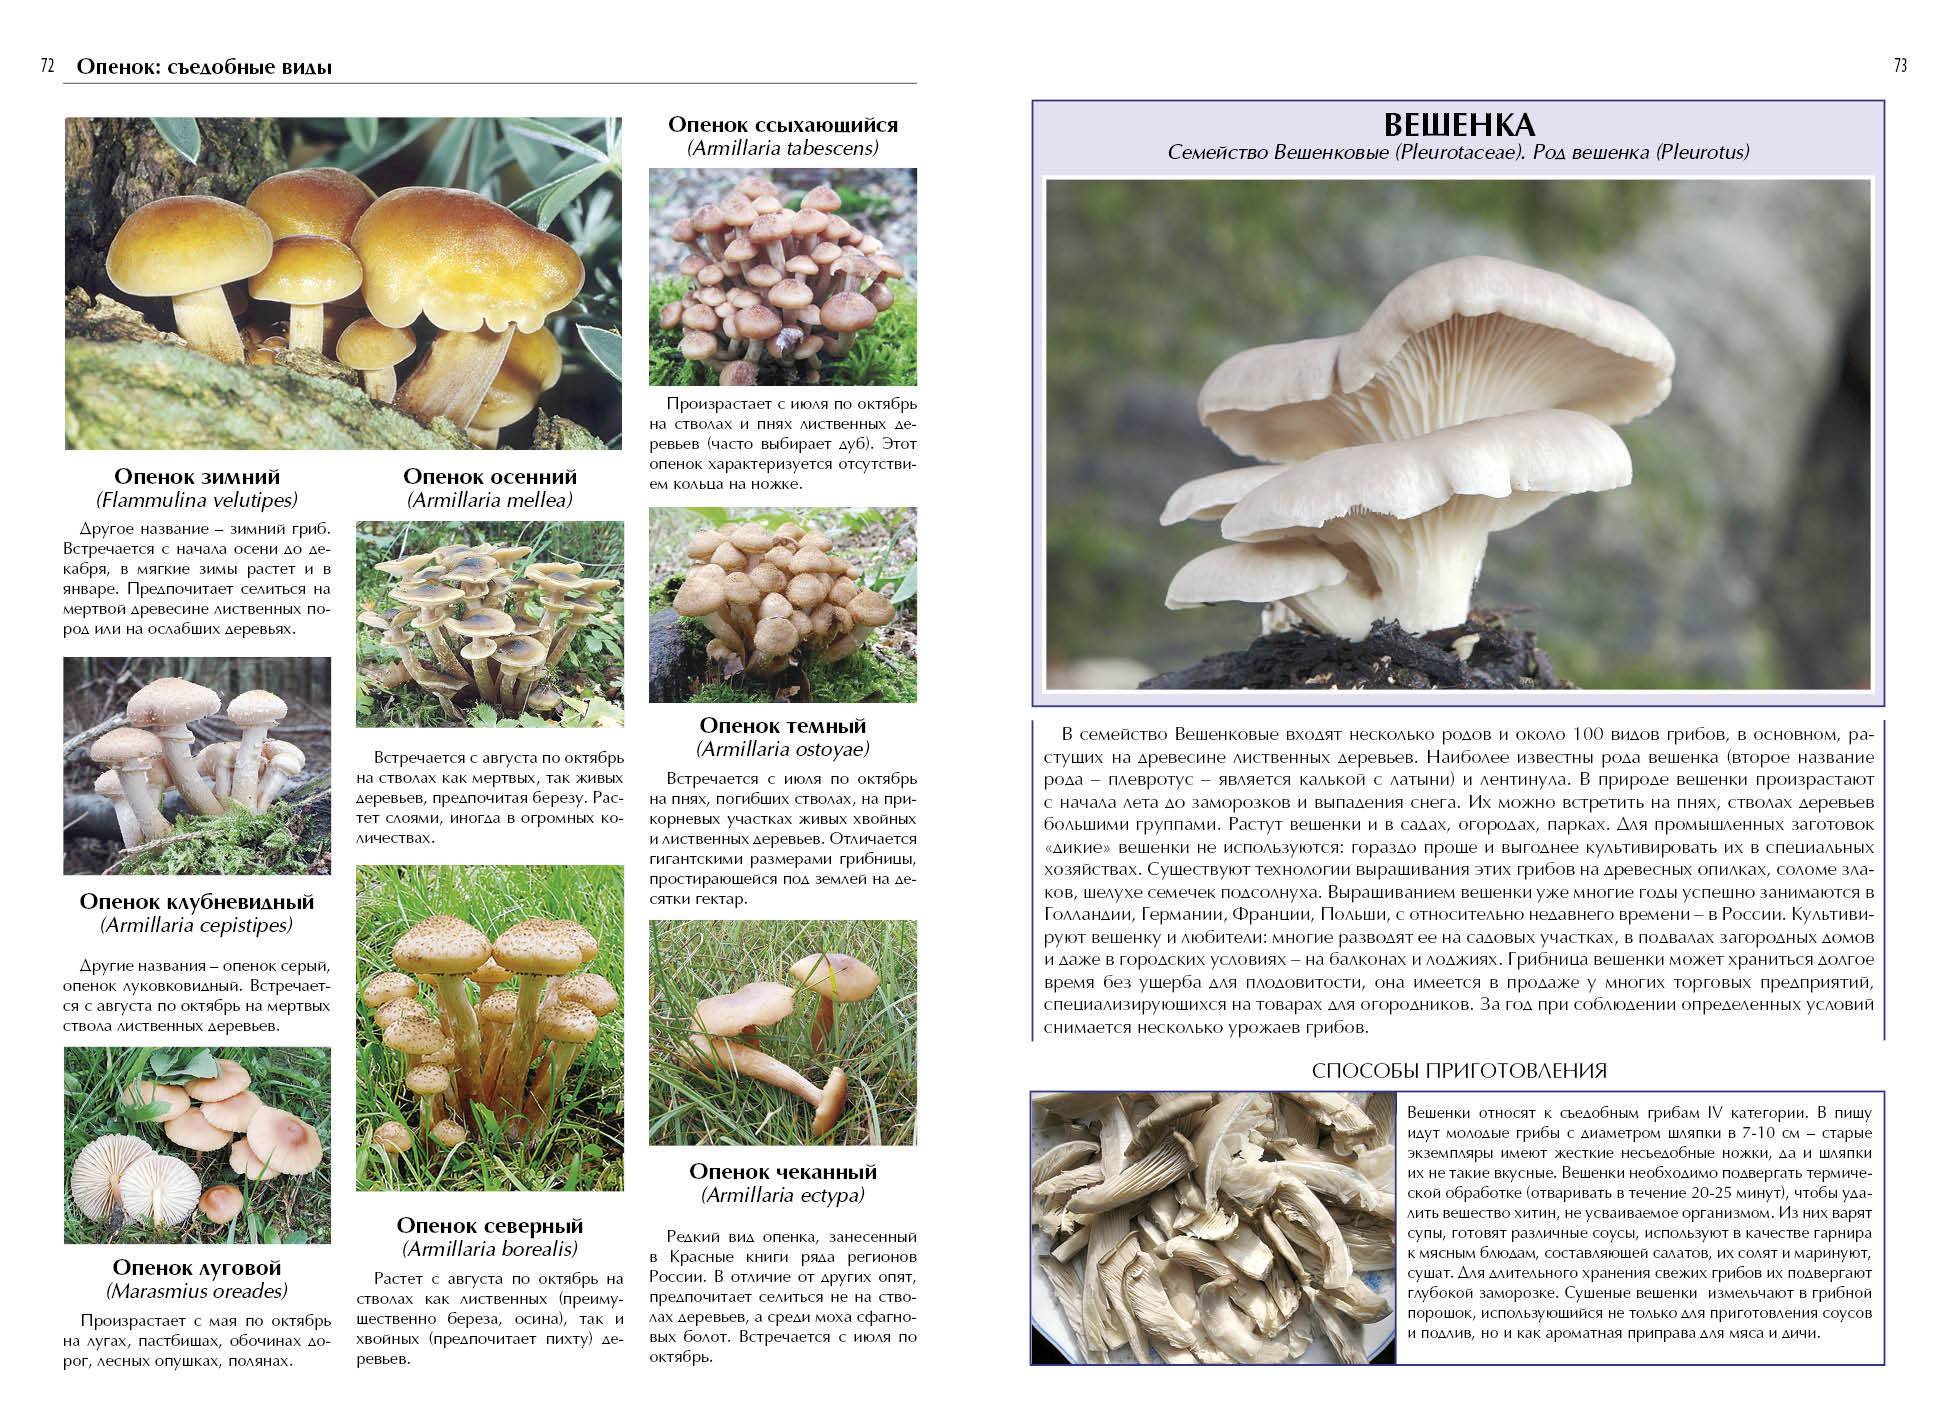 Лопастник курчавый (helvella crispa): фото, описание и как готовить этот гриб